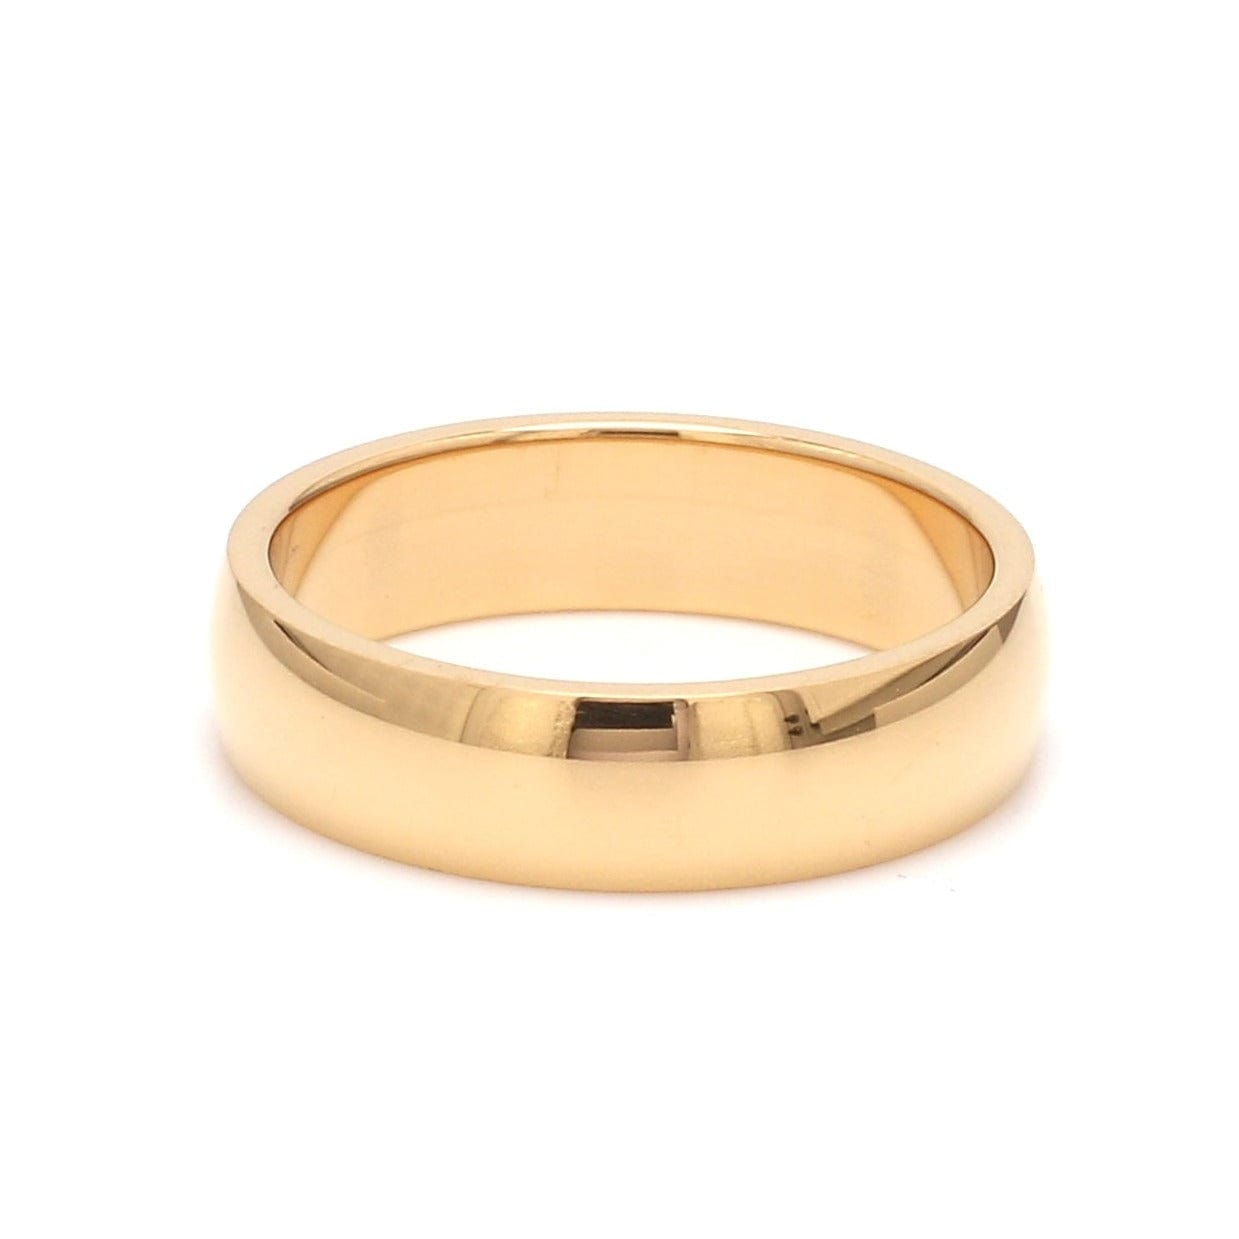 22K Gold Ring For Men - 235-GR7436 in 4.050 Grams